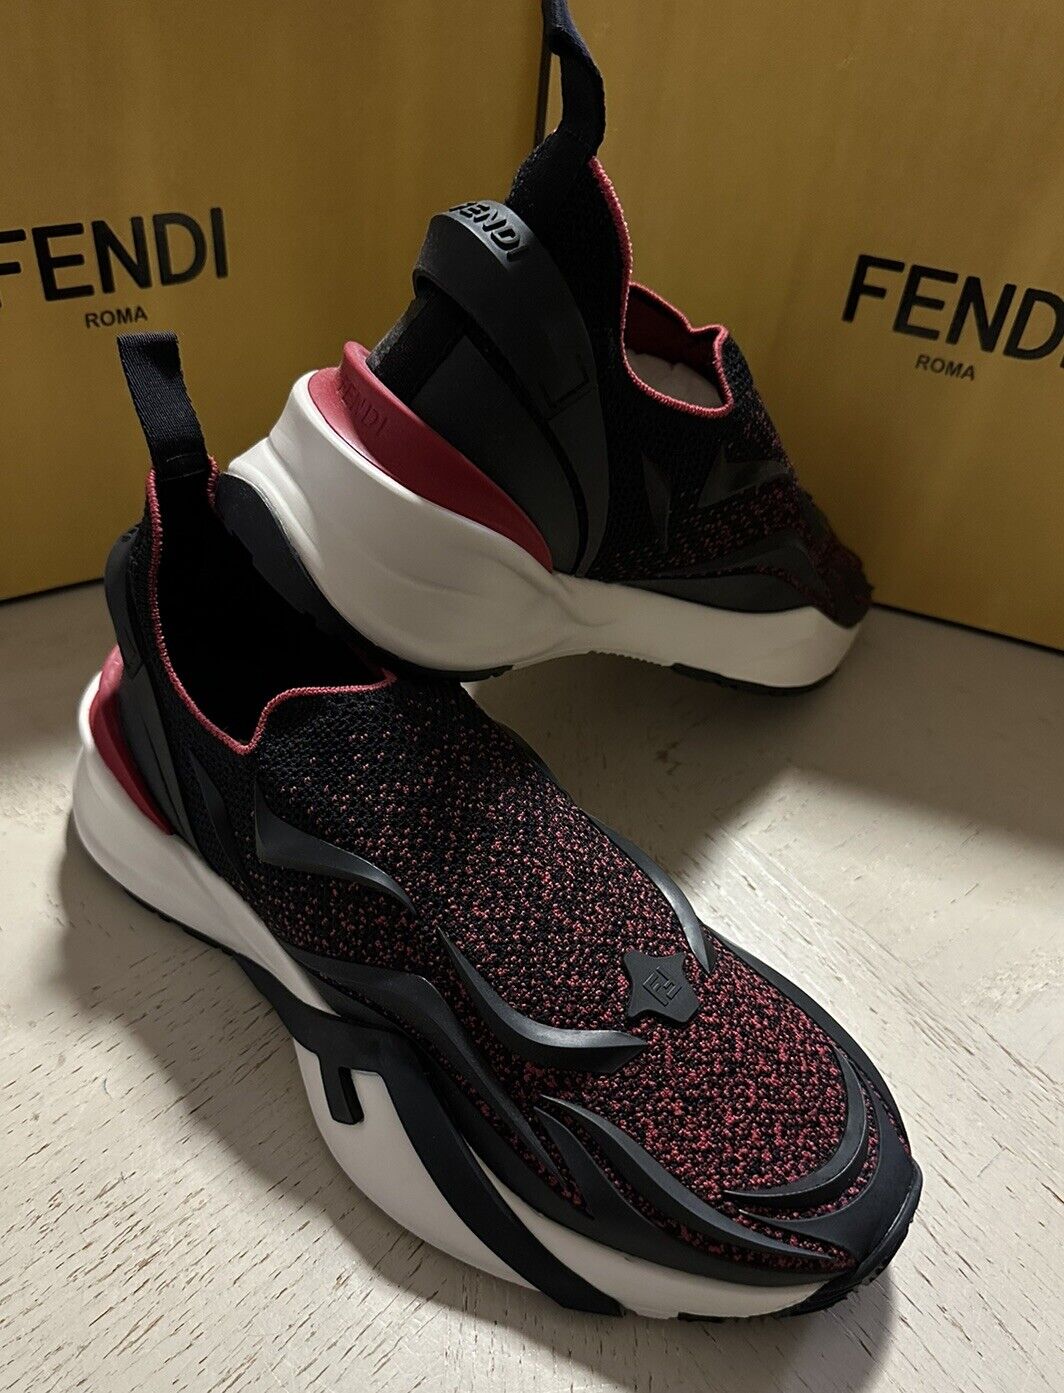 Fendi Men Flow Knit Low Top Sneakers Rubin/Black 10 US/9 UK New $1050